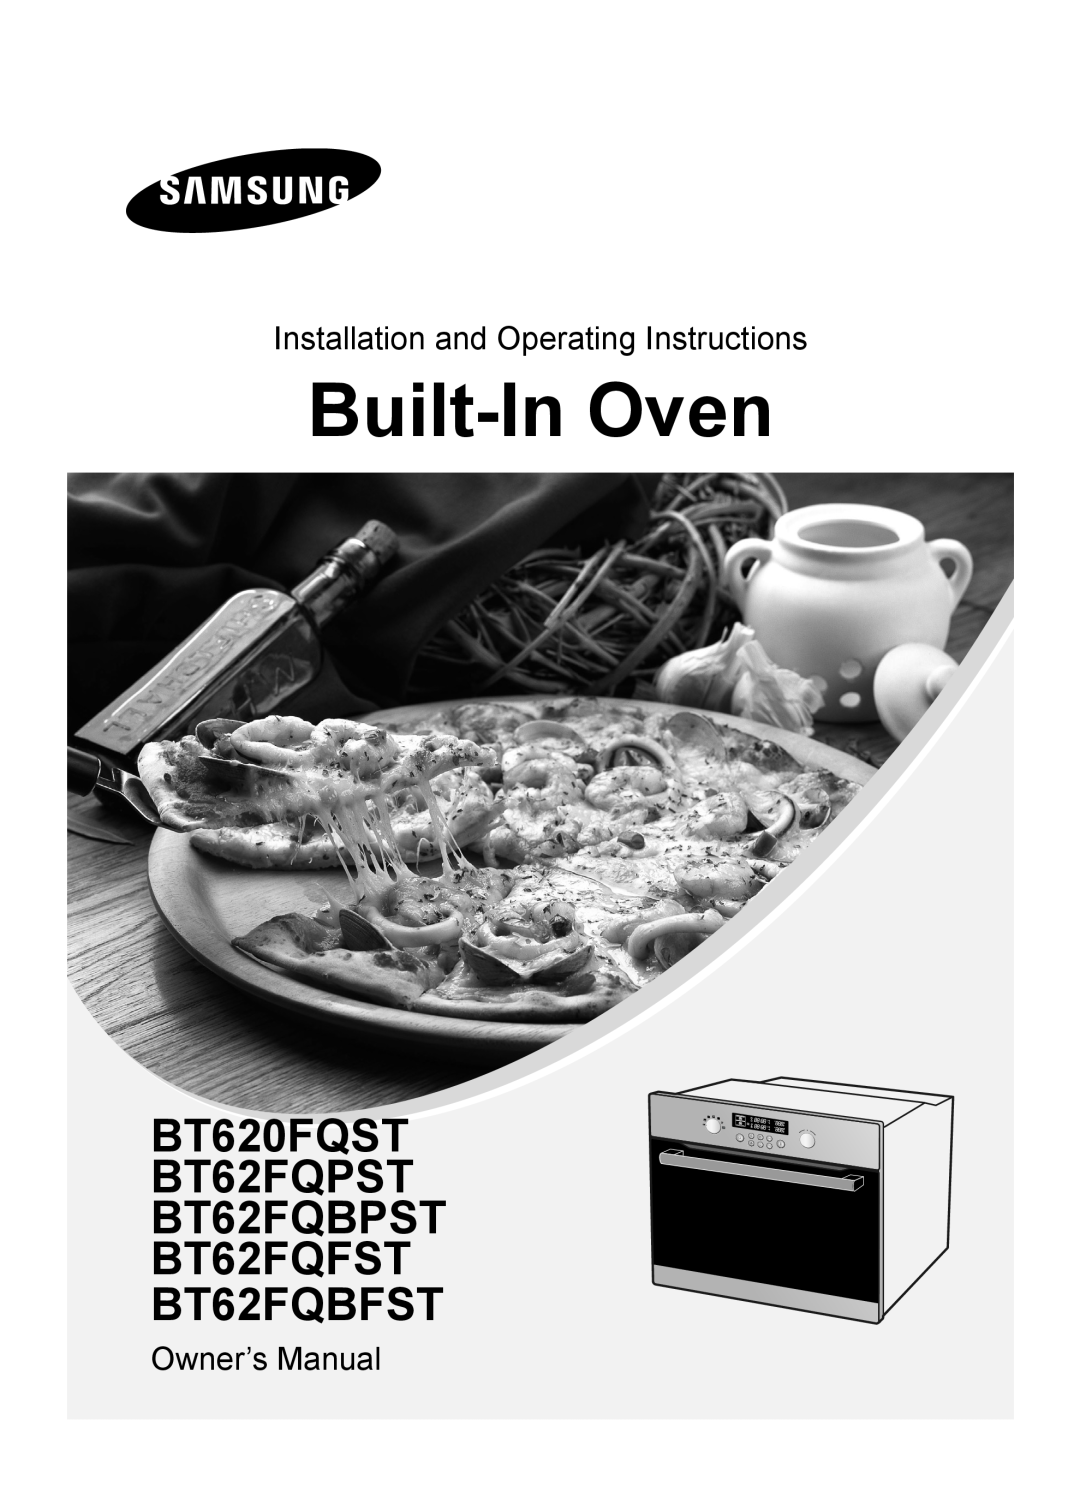 Samsung owner manual Built-In Oven, BT620FQST BT62FQPST BT62FQBPST BT62FQFST BT62FQBFST, Owner’s Manual 